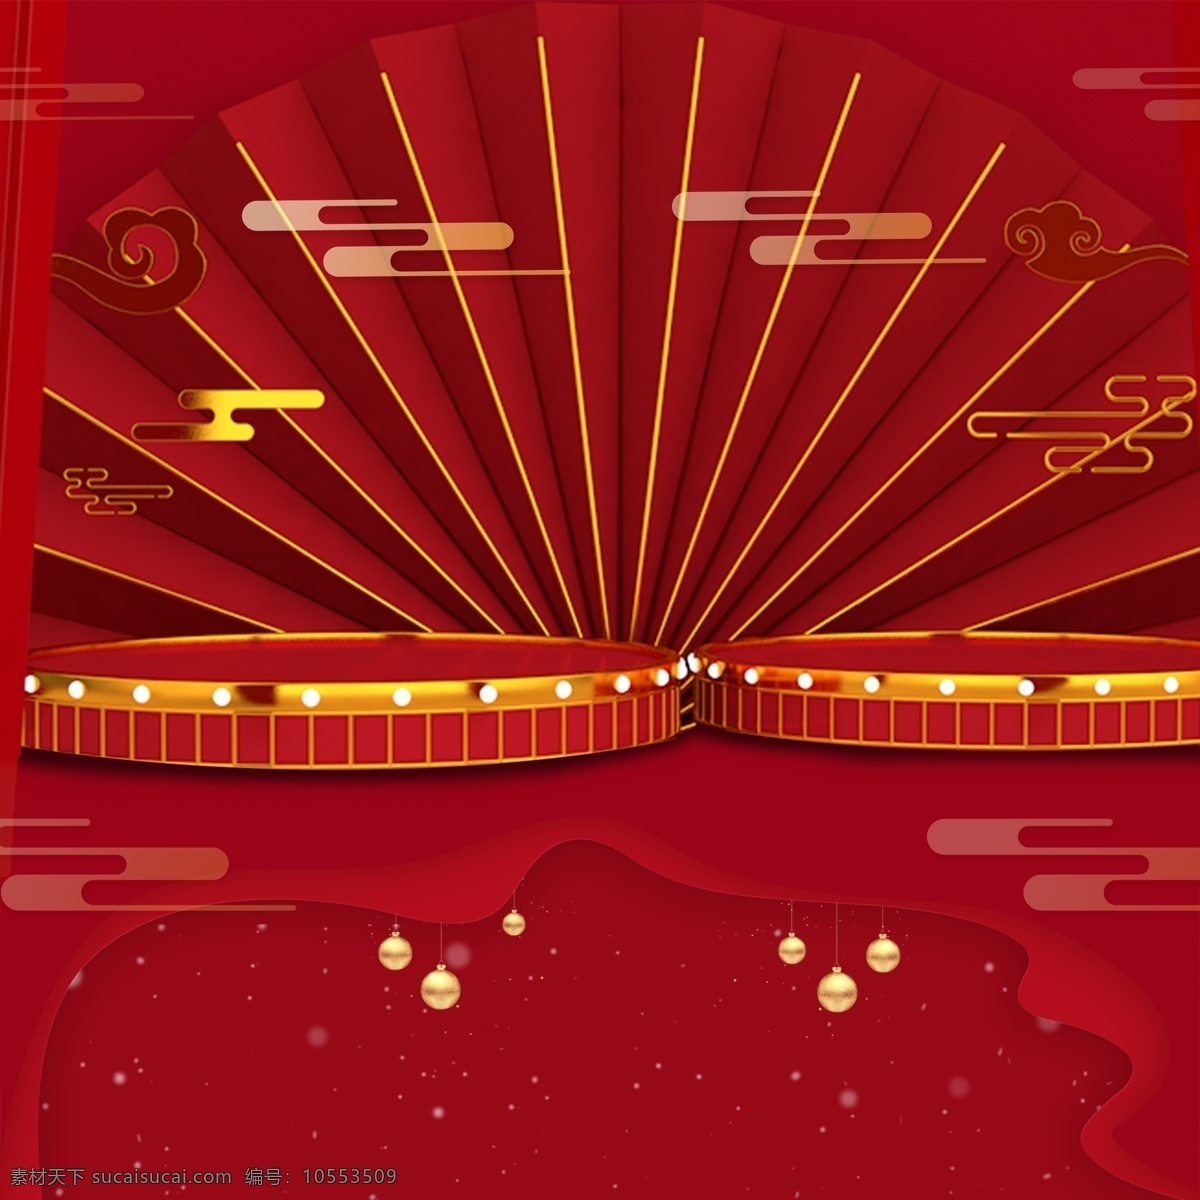 红色 中 国风 元宵节 背景 中国风 元宵节背景 广告背景 背景素材 背景展板 彩色背景